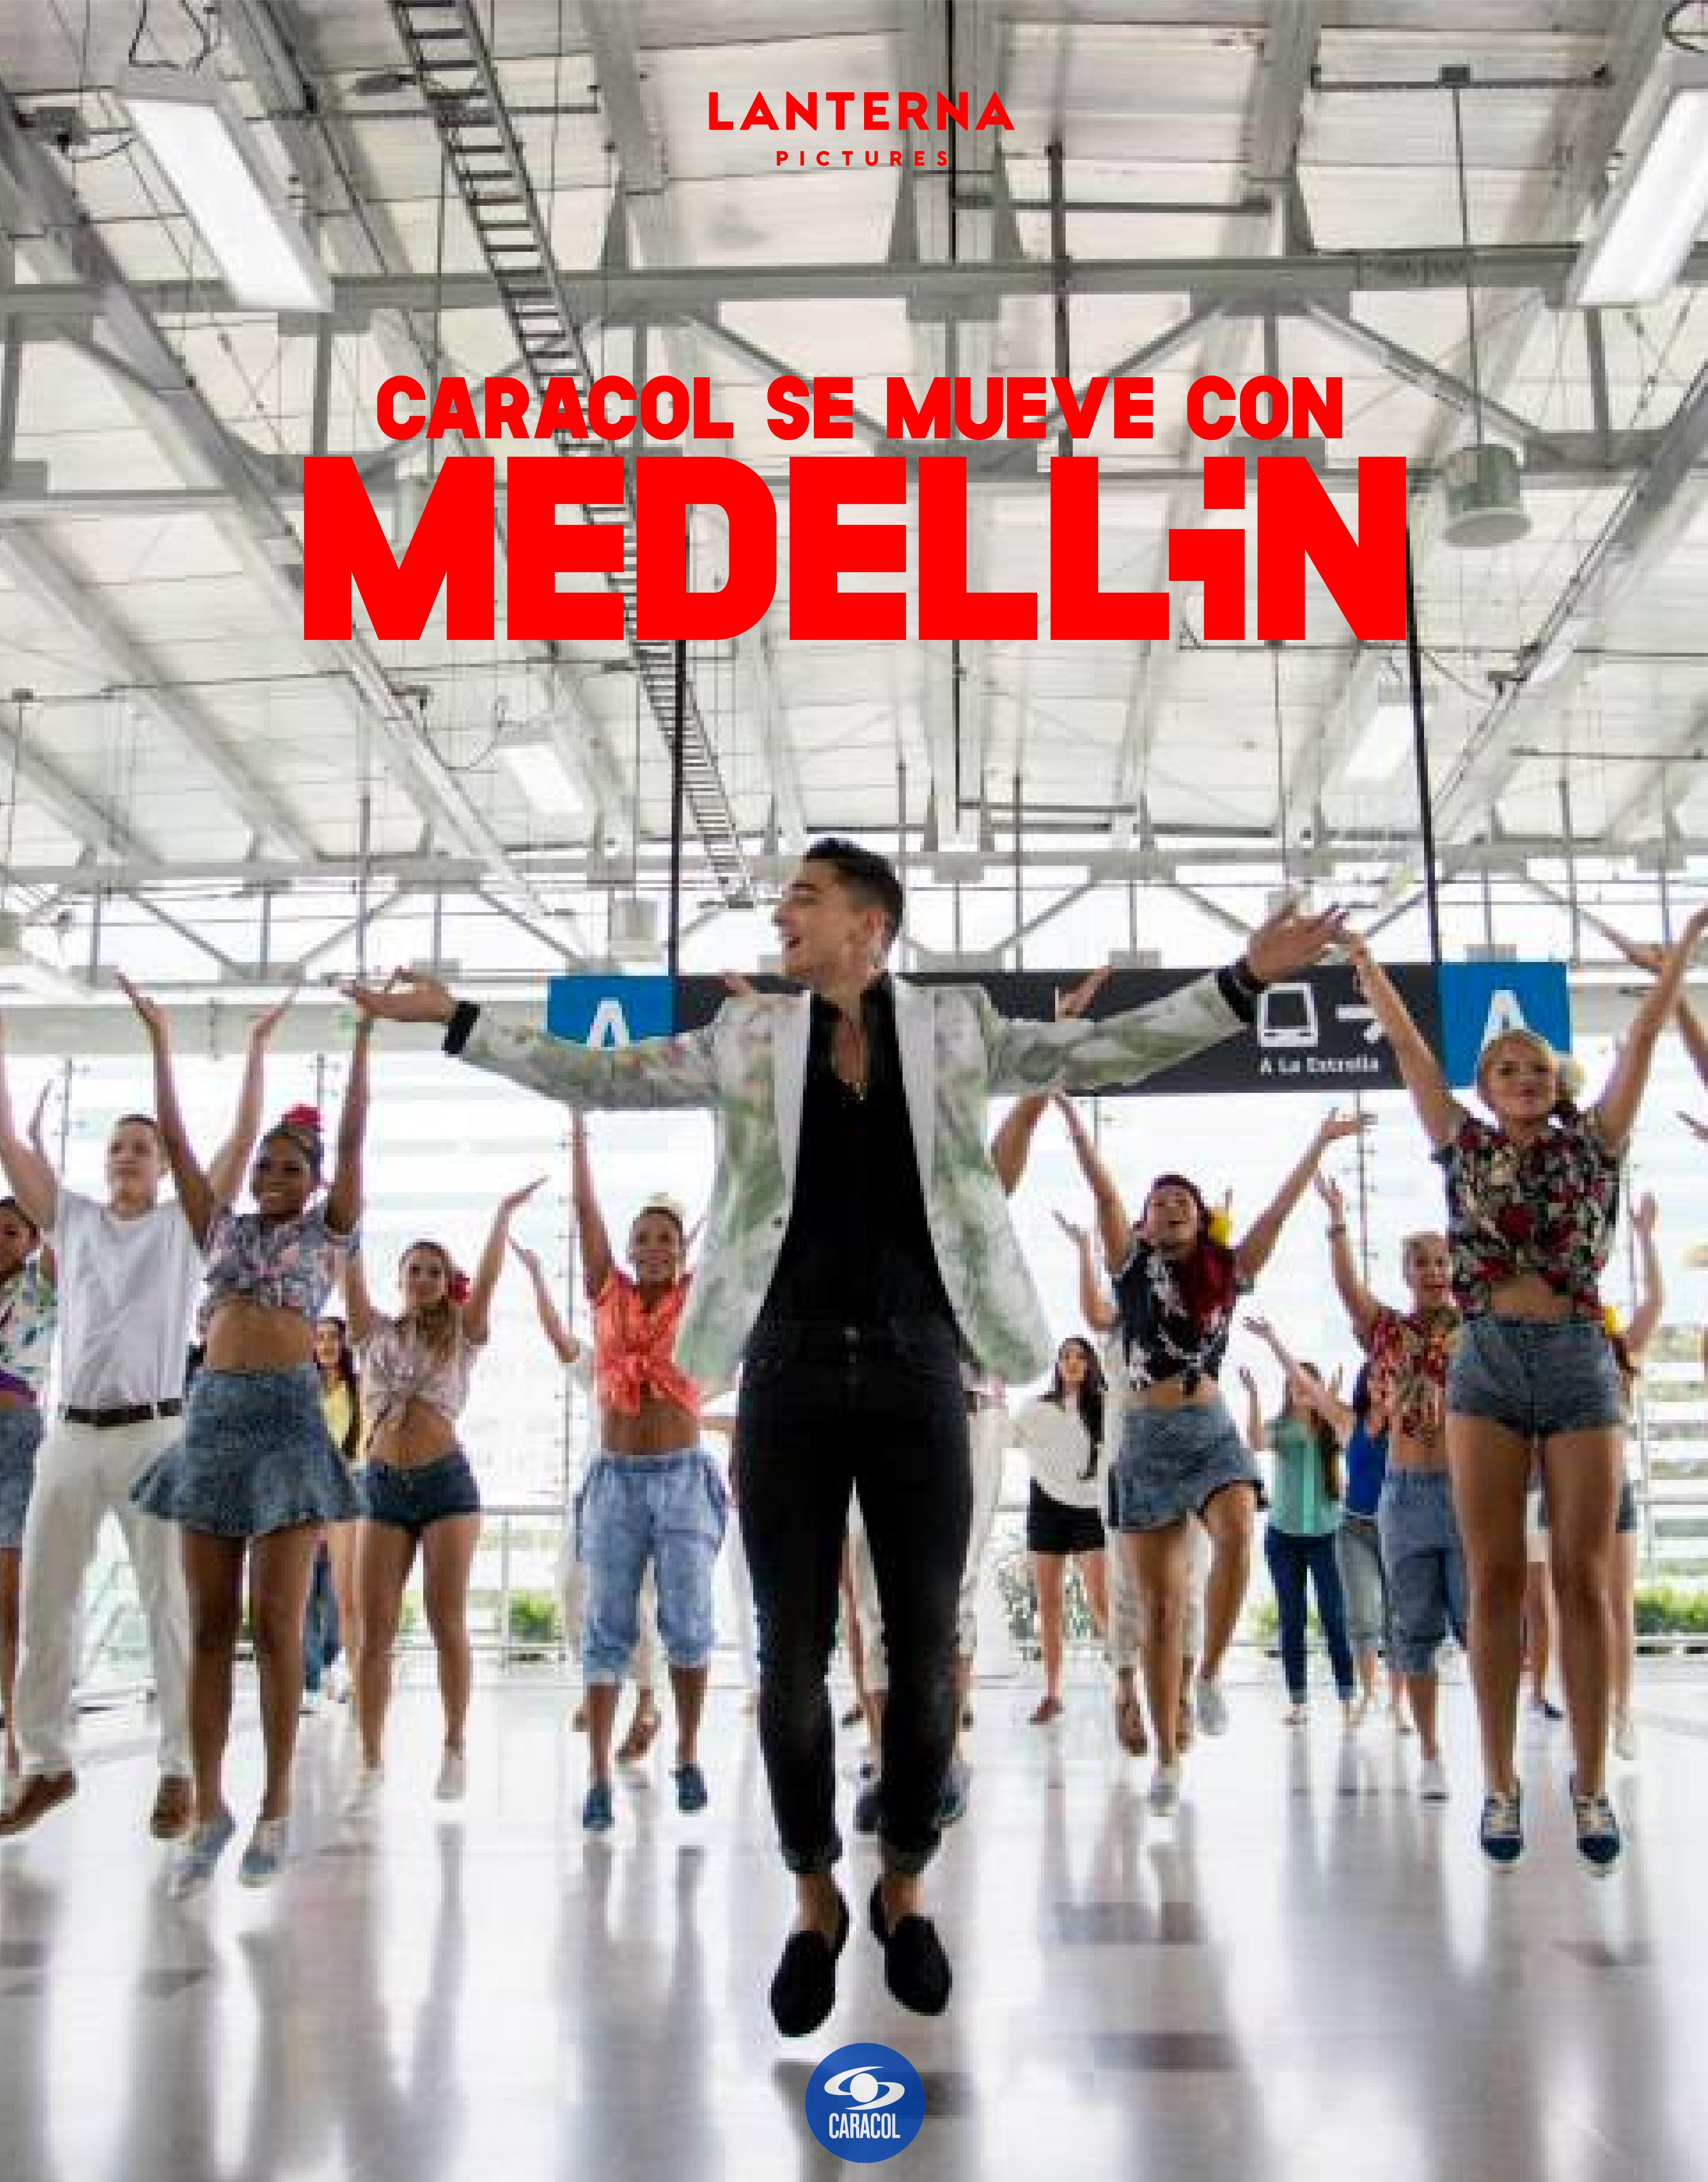 Caracol se mueve con Medellin